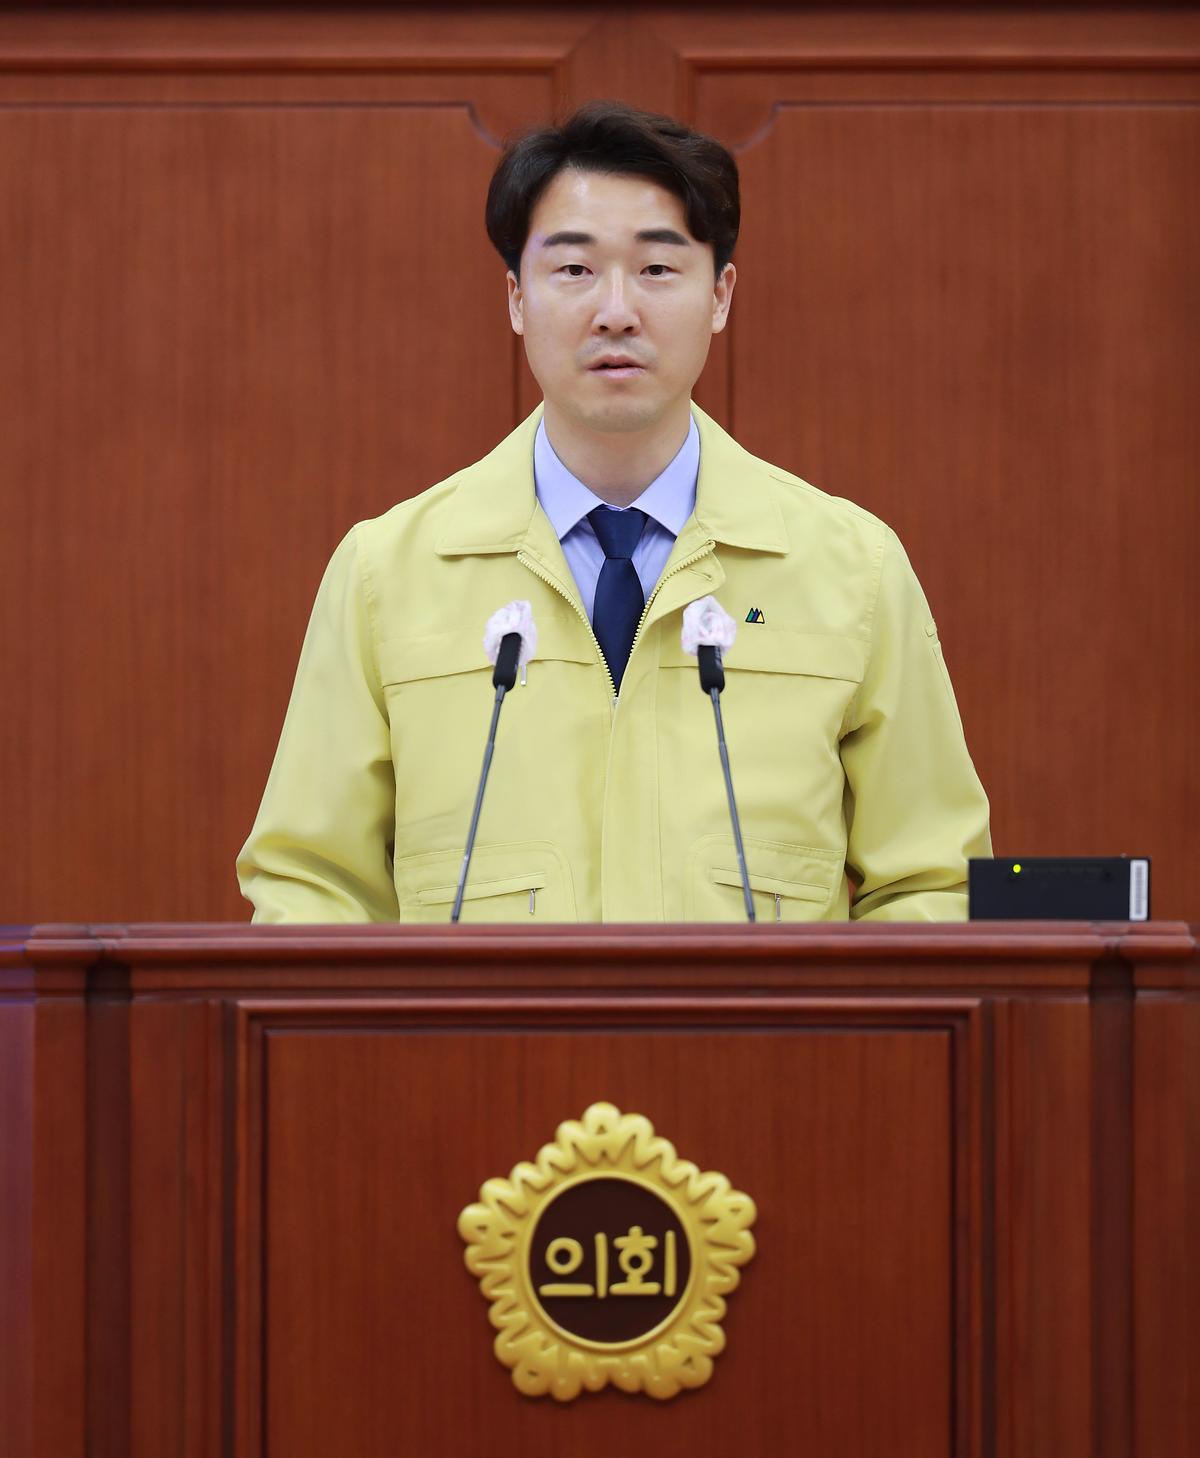 박수빈 의원, 당선의원 선서 [ 2020-06-01 ]